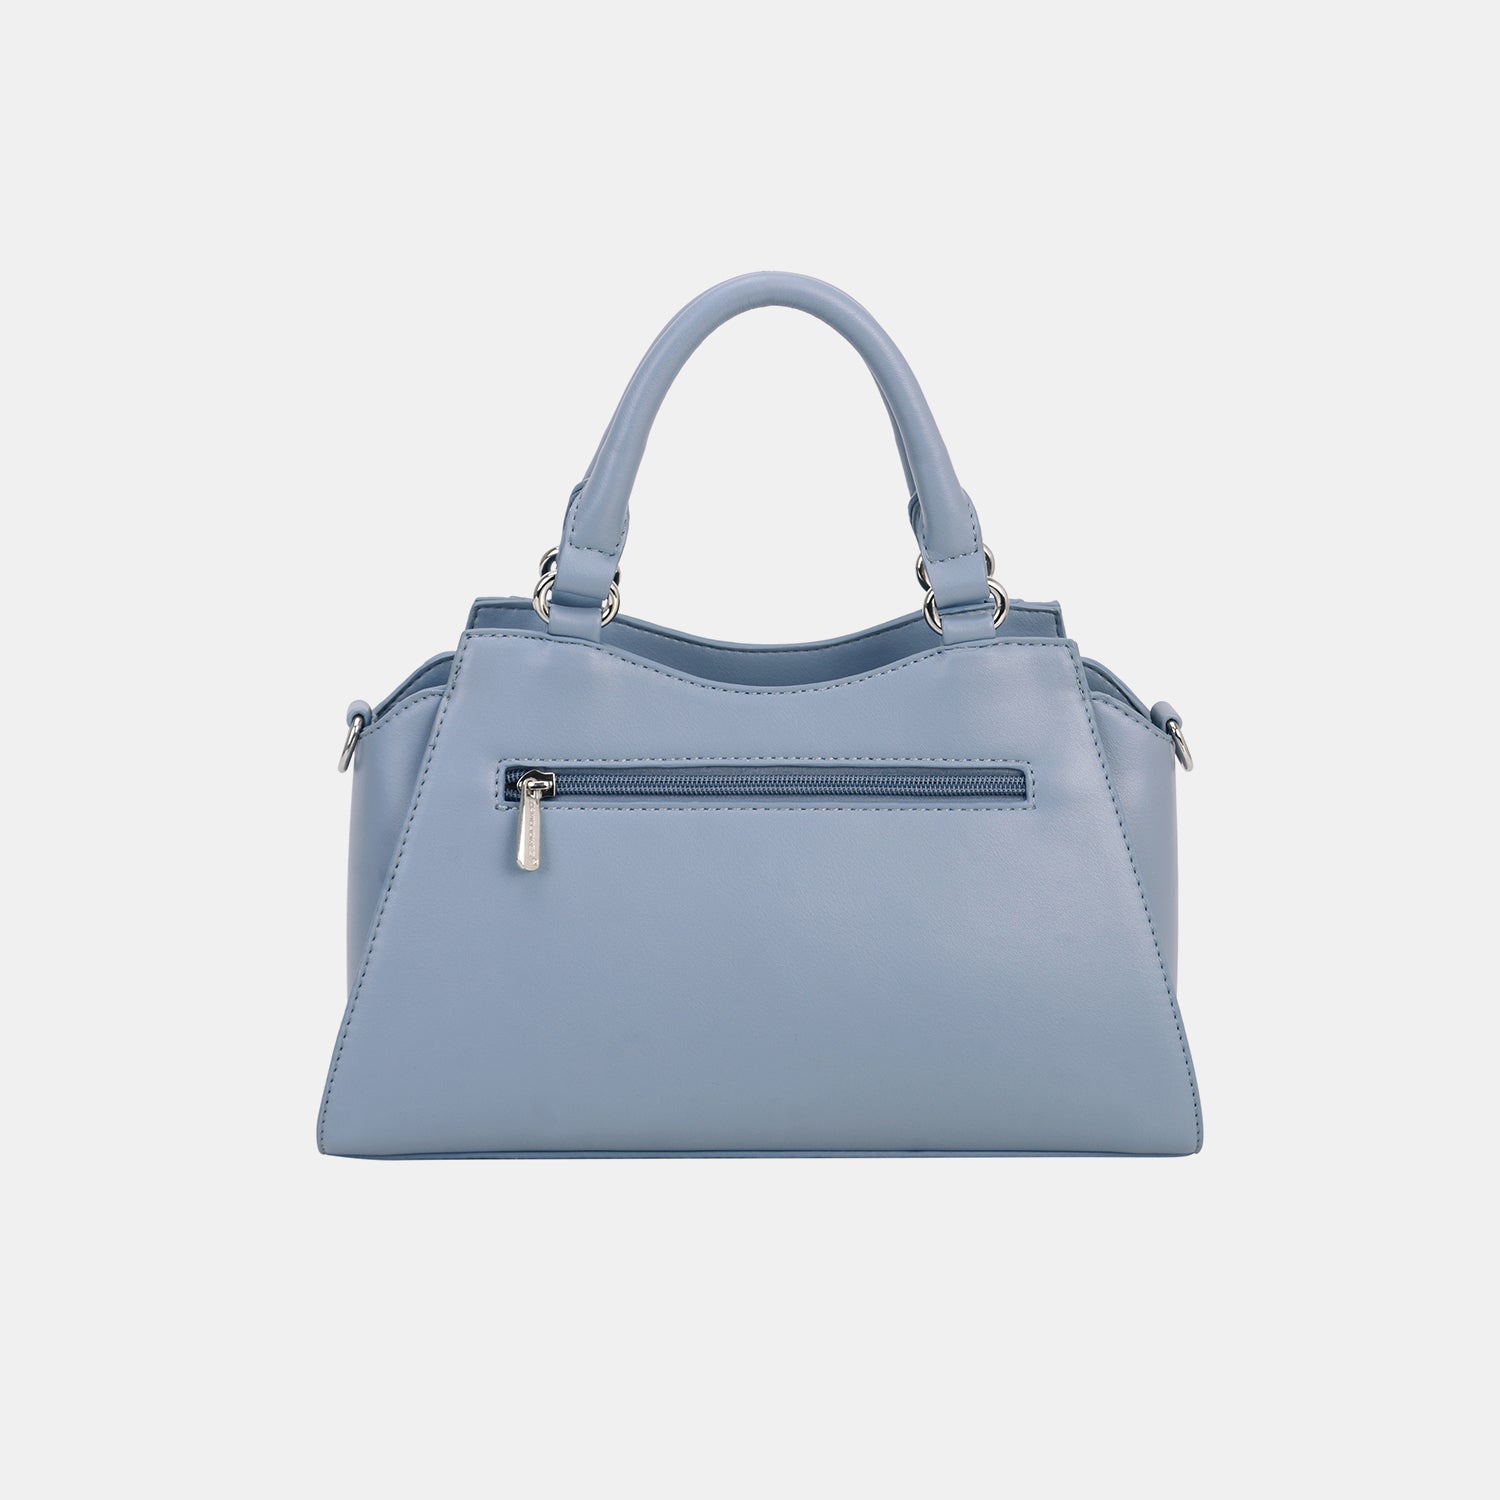 PU Leather Handbag | Handbags - CHANELIA